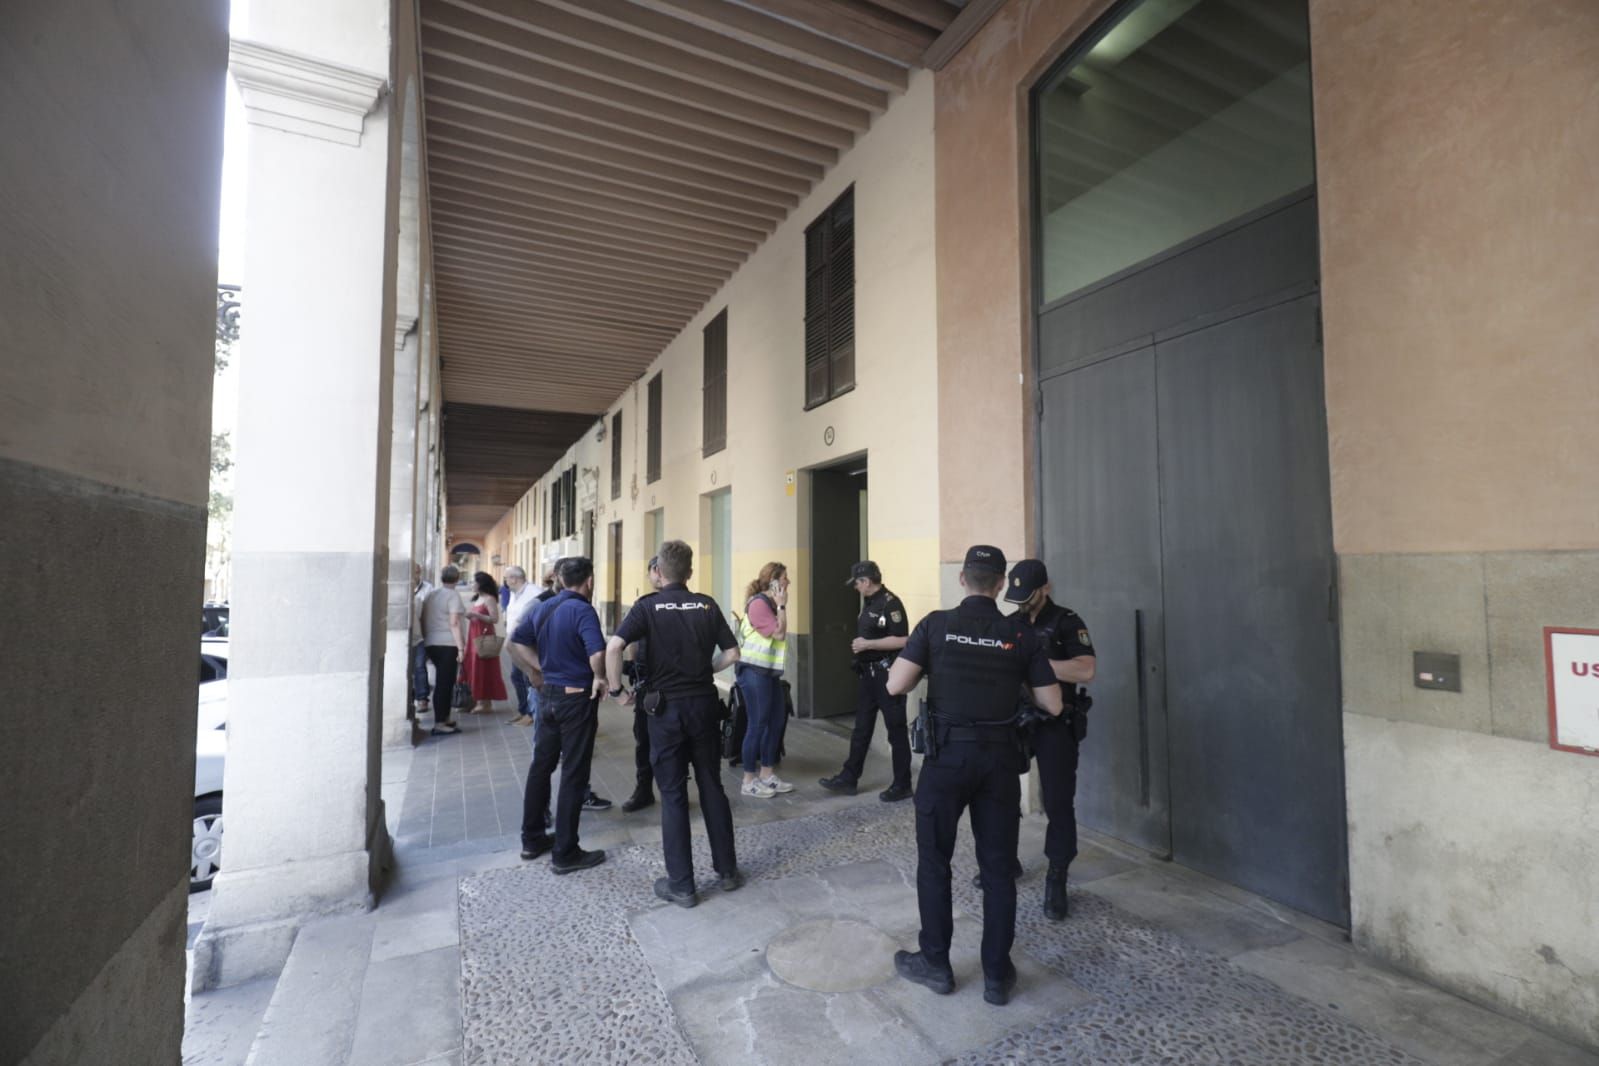 La sede del PP en Palma, desalojada tras un aviso por un paquete sospechoso